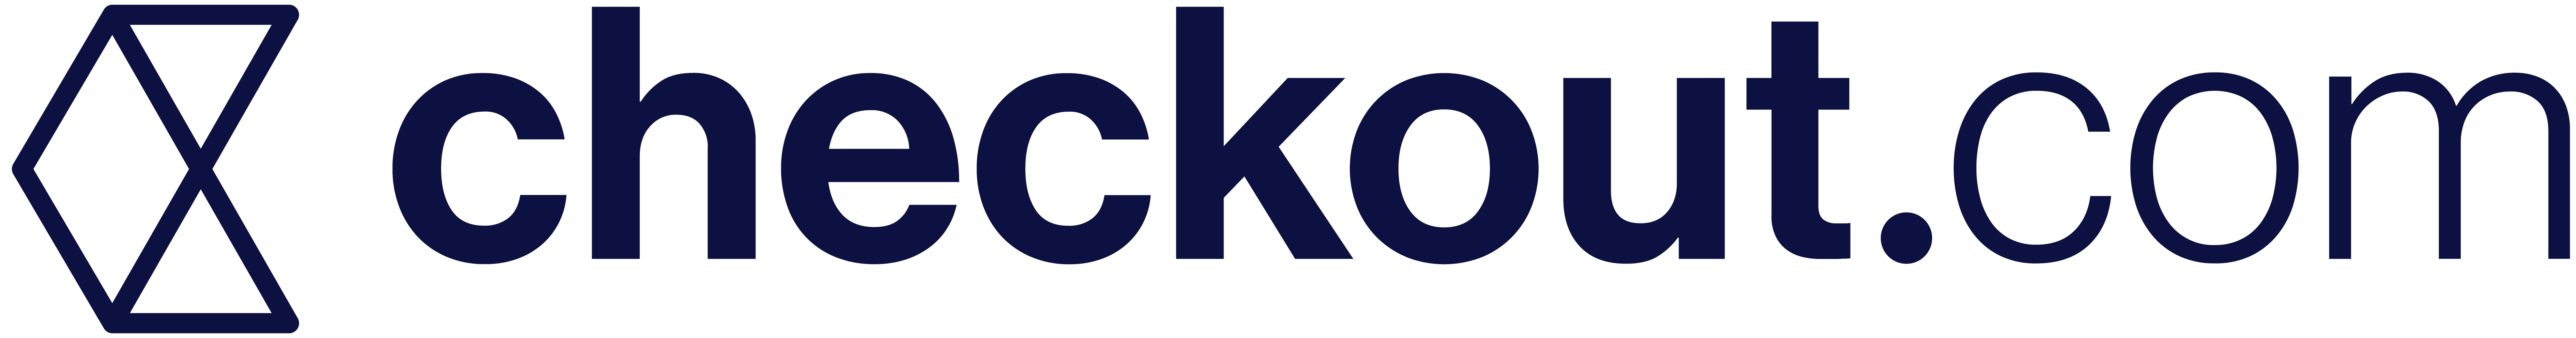 Checkout.com-Logo.png